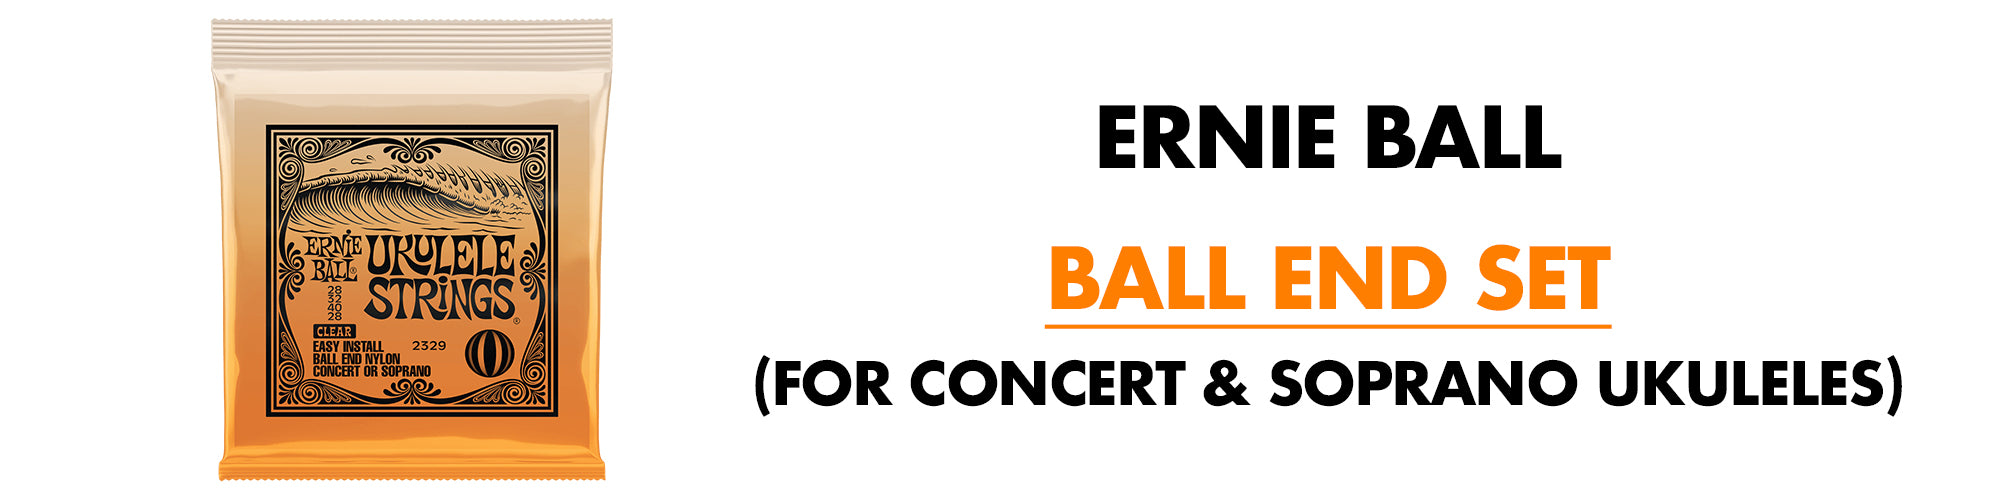 Ernie Ball Concert/Soprano Ukulele Strings, Clear Nylon, Ball End